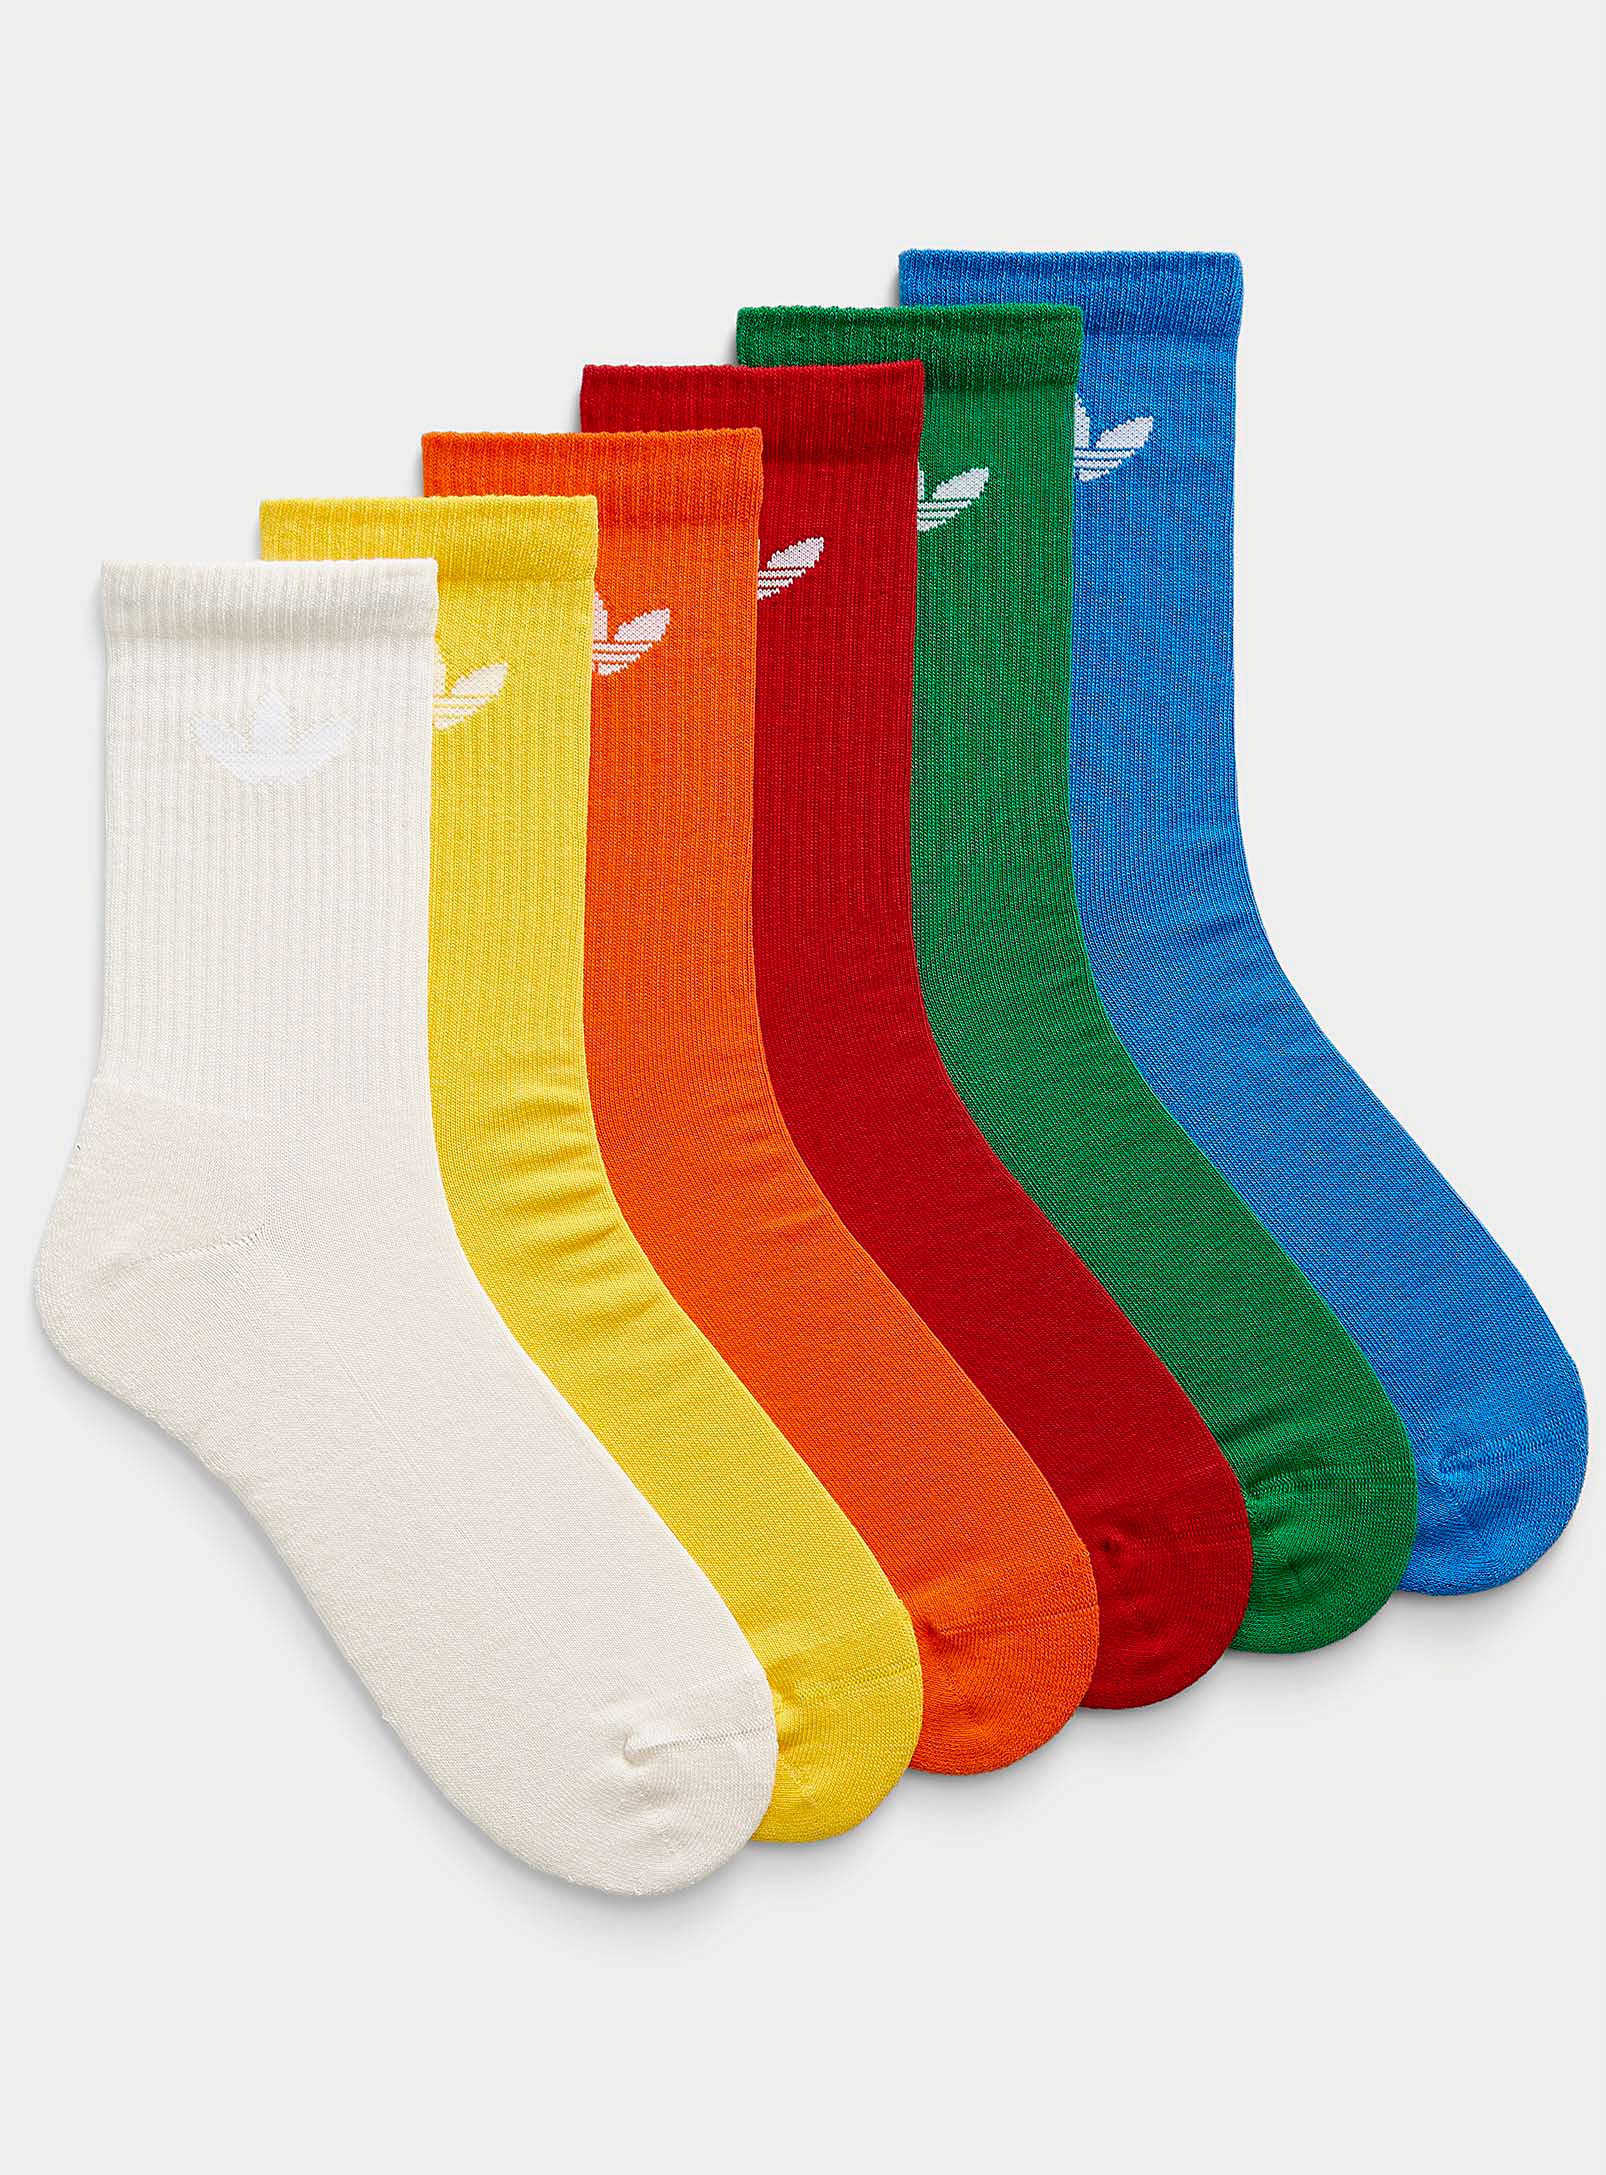 Adidas Originals - Men's Colourful athletic socks 6-pack